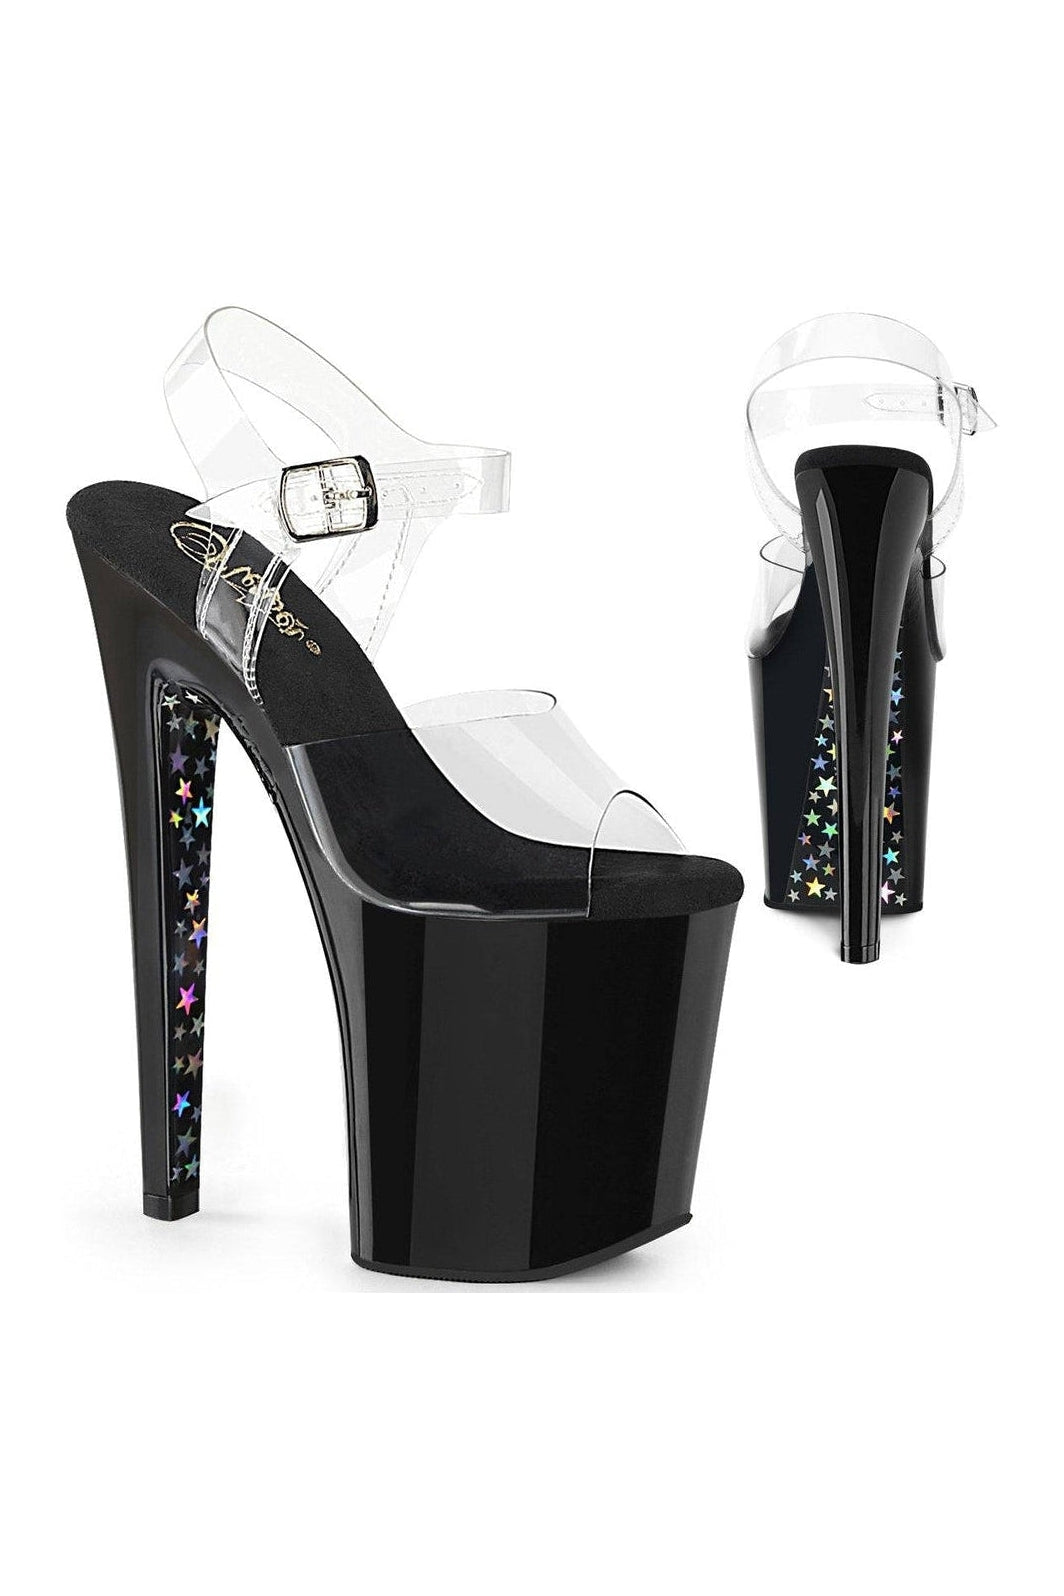 Pleaser Hologram Sandals Platform Stripper Shoes | Buy at Sexyshoes.com